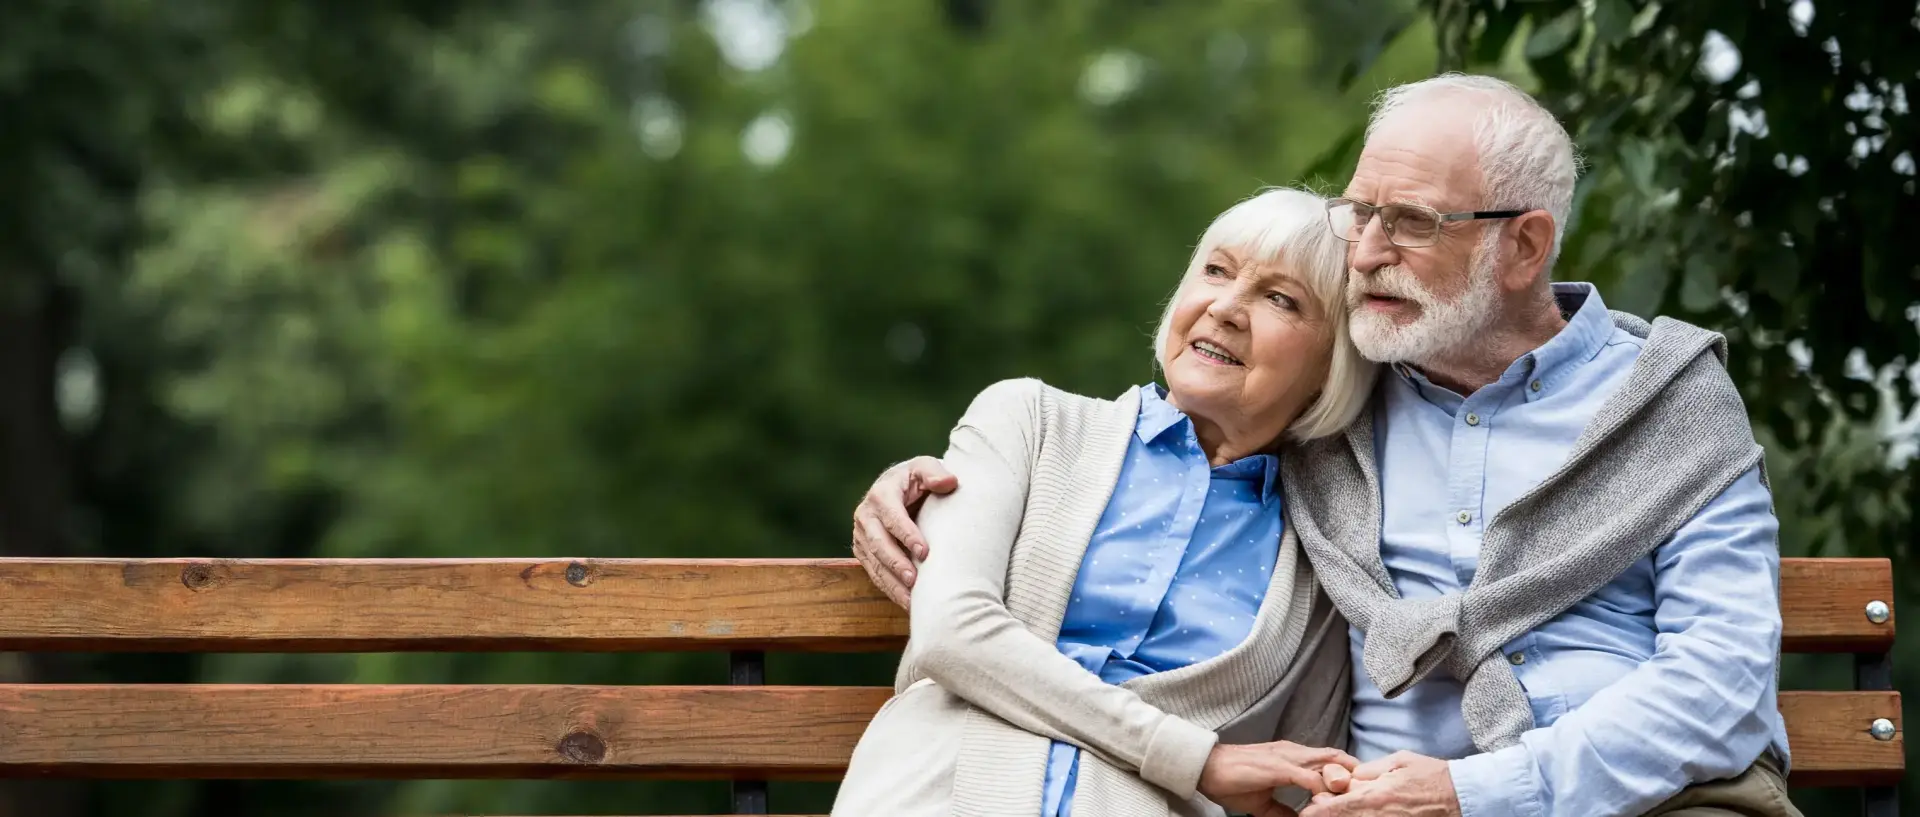 Rentnerpaar sitzt auf einer Bank im Park und geniesst ihre freie Zeit